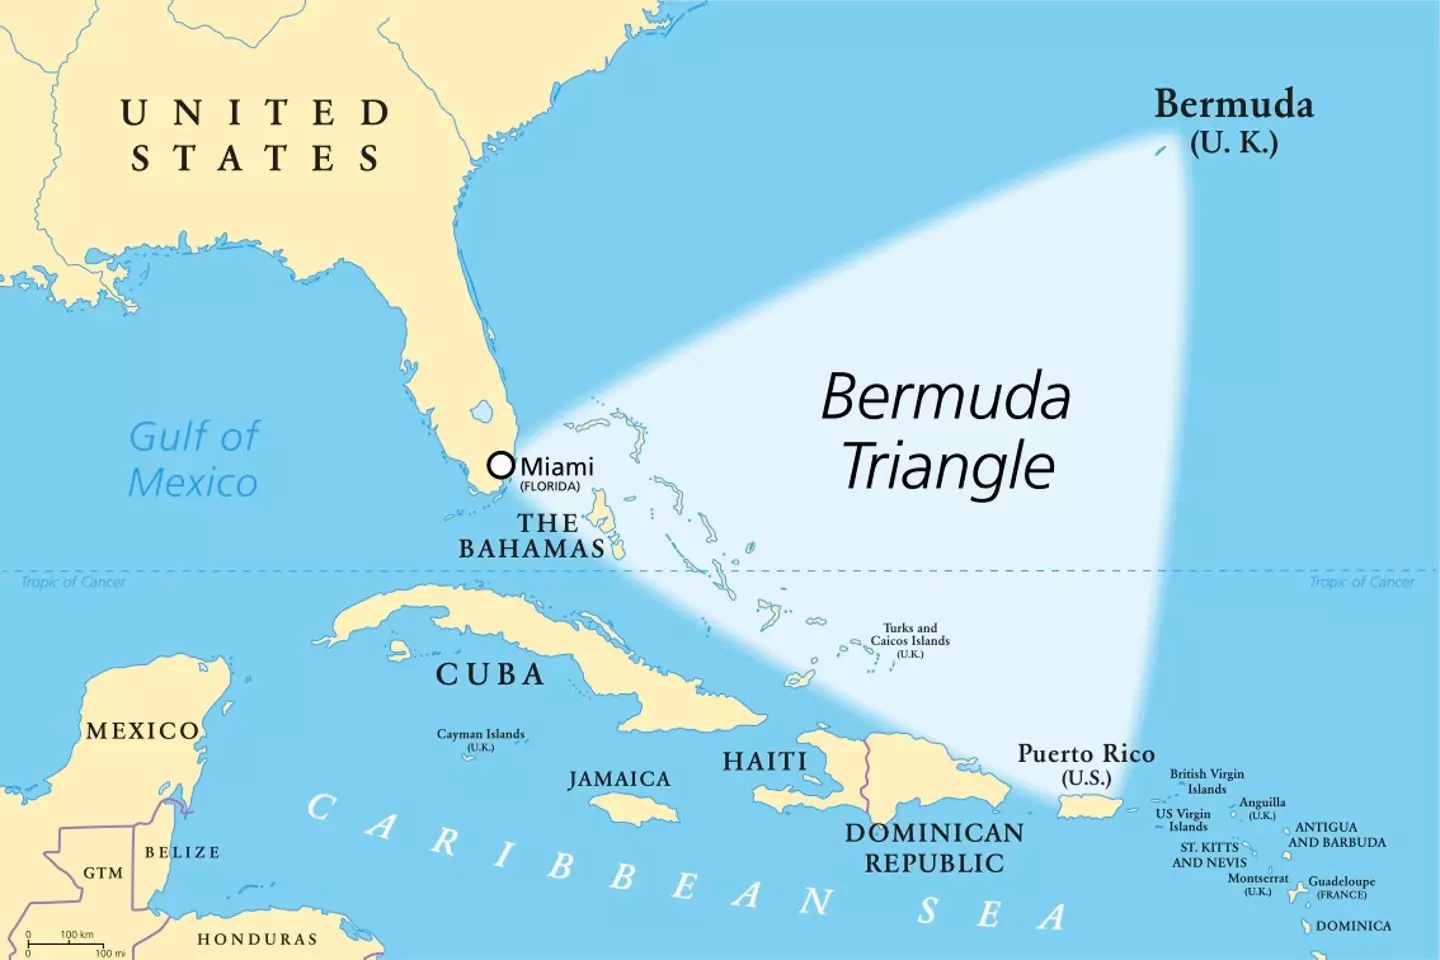 The Bermuda Triangle.